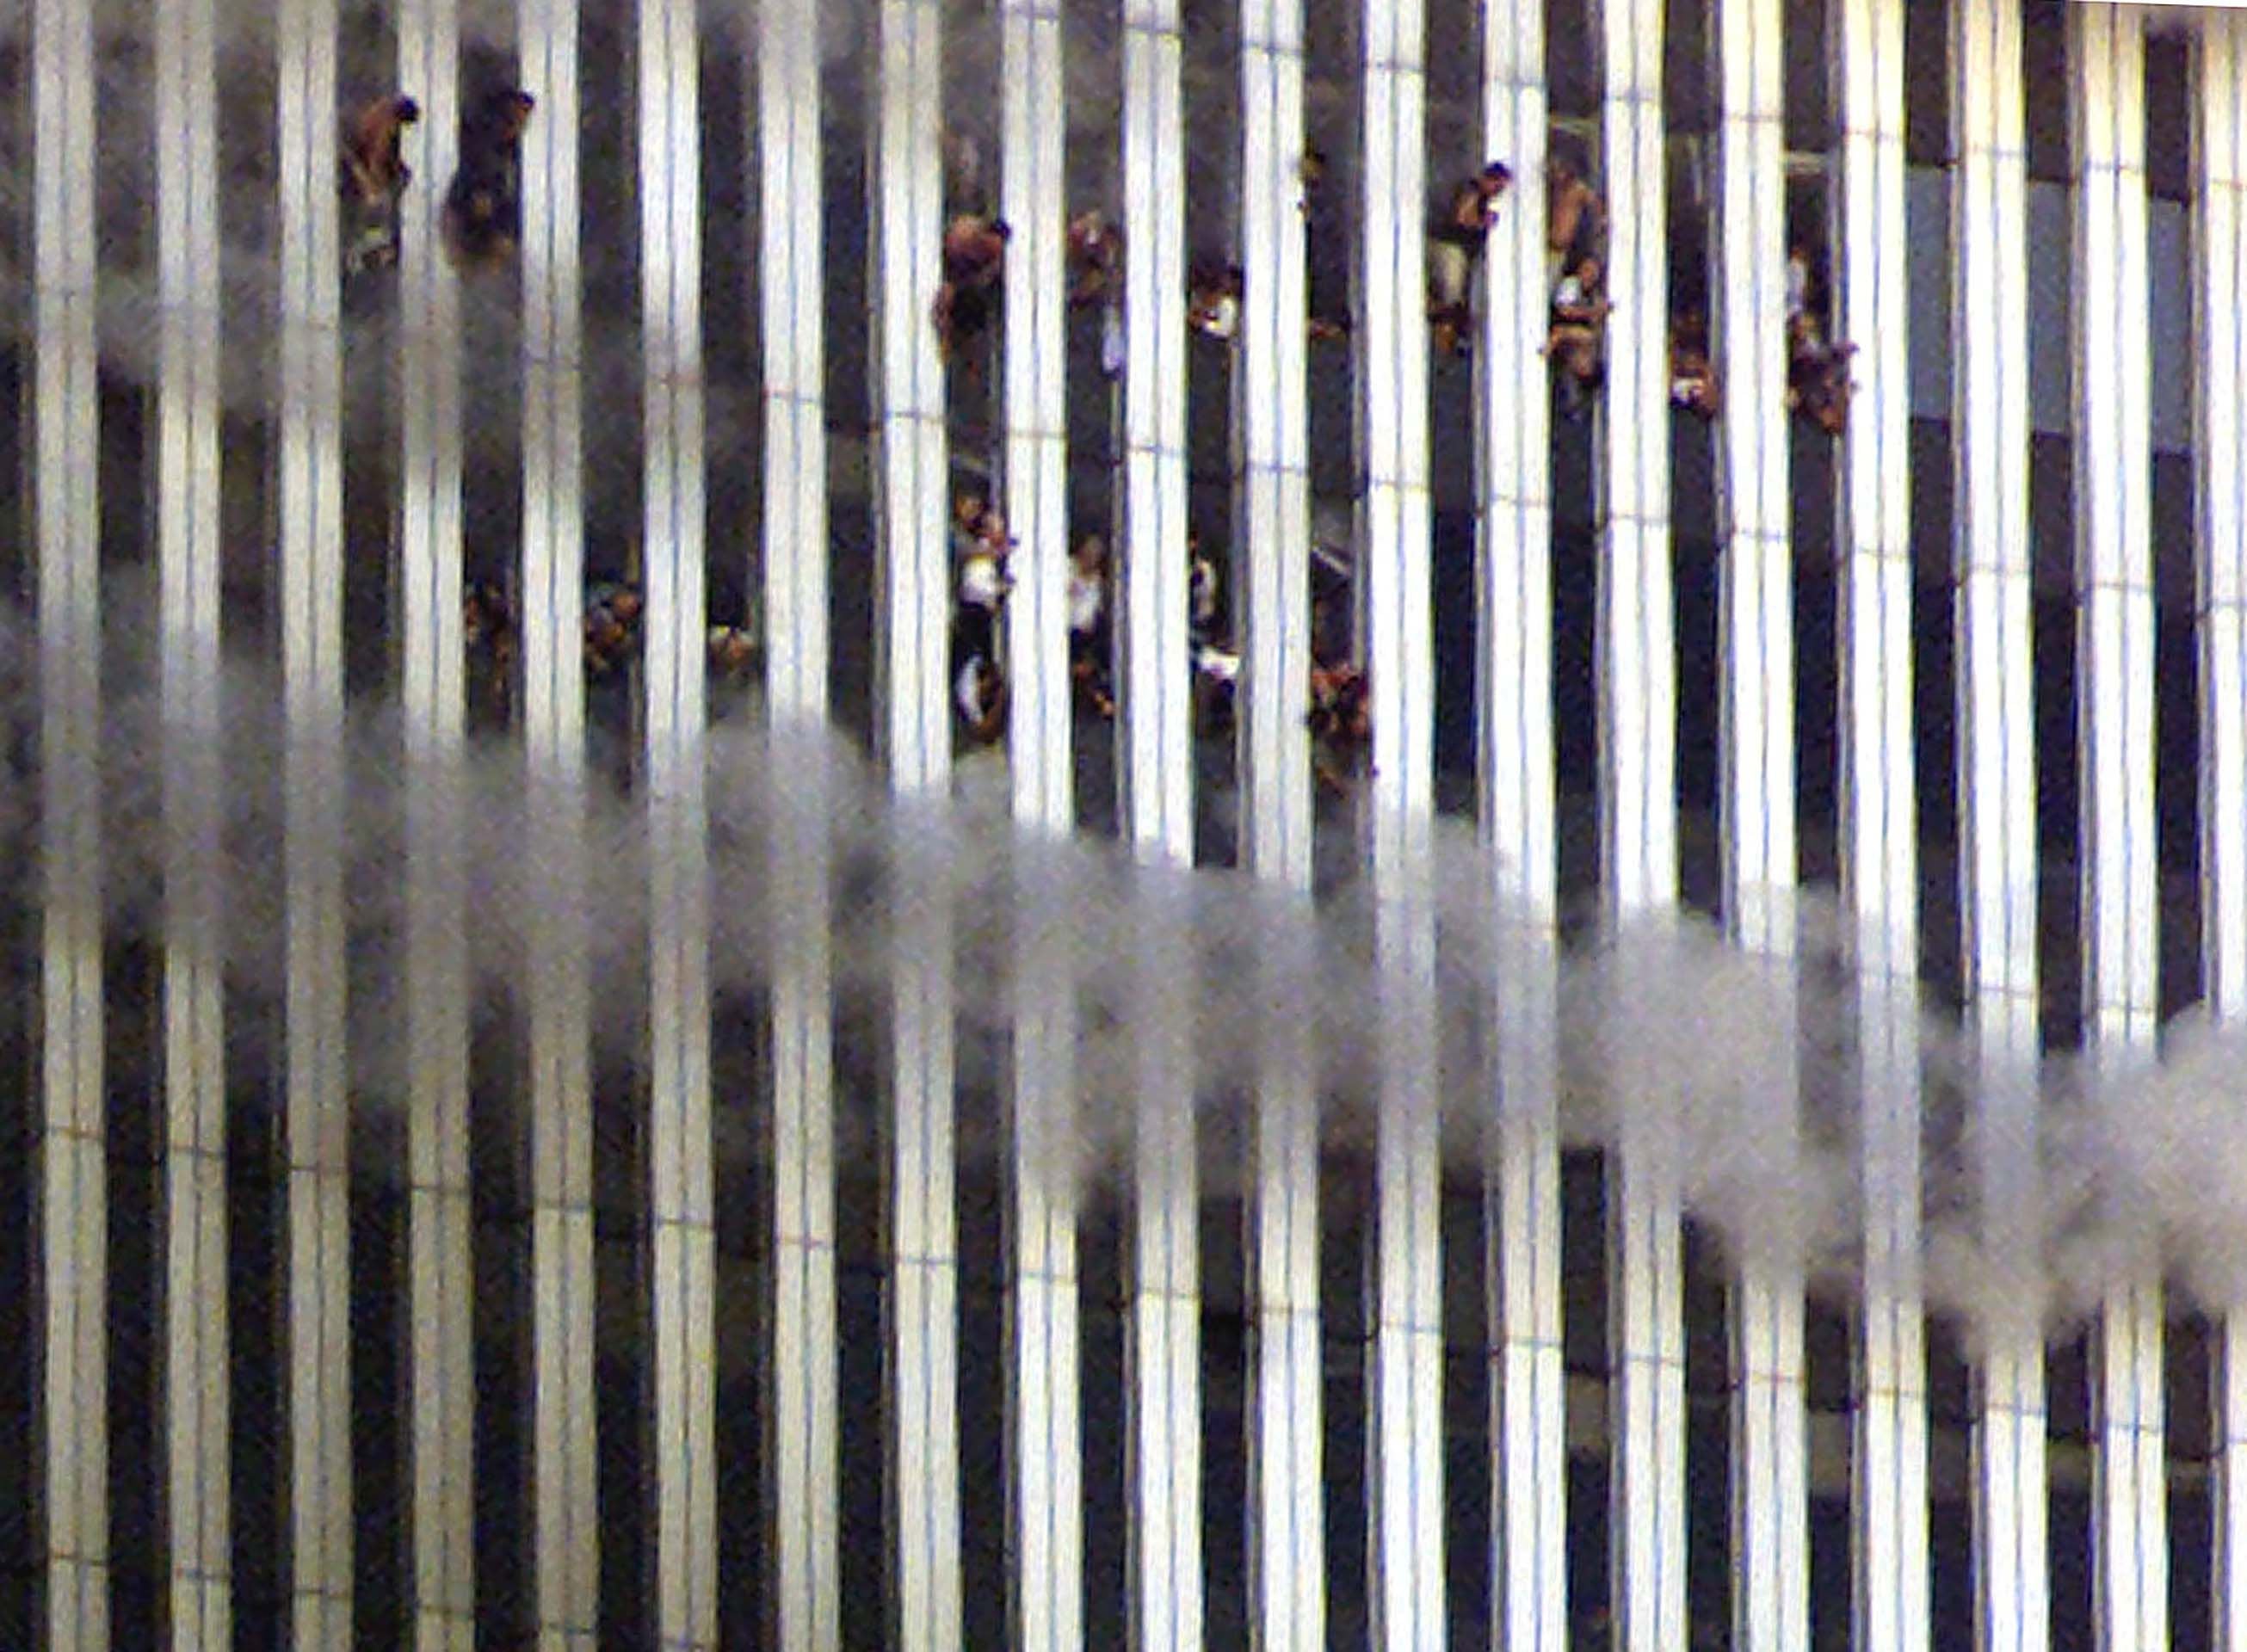 La gente se asoma a la ventana desde la torre norte, mientras intenta sobrevivir al incendio. Es una de las imágenes más recordadas e impactantes. Luego, desesperanzados, muchos de ellos tomarían una decisión desesperada que también sería capturada por las cámaras. 